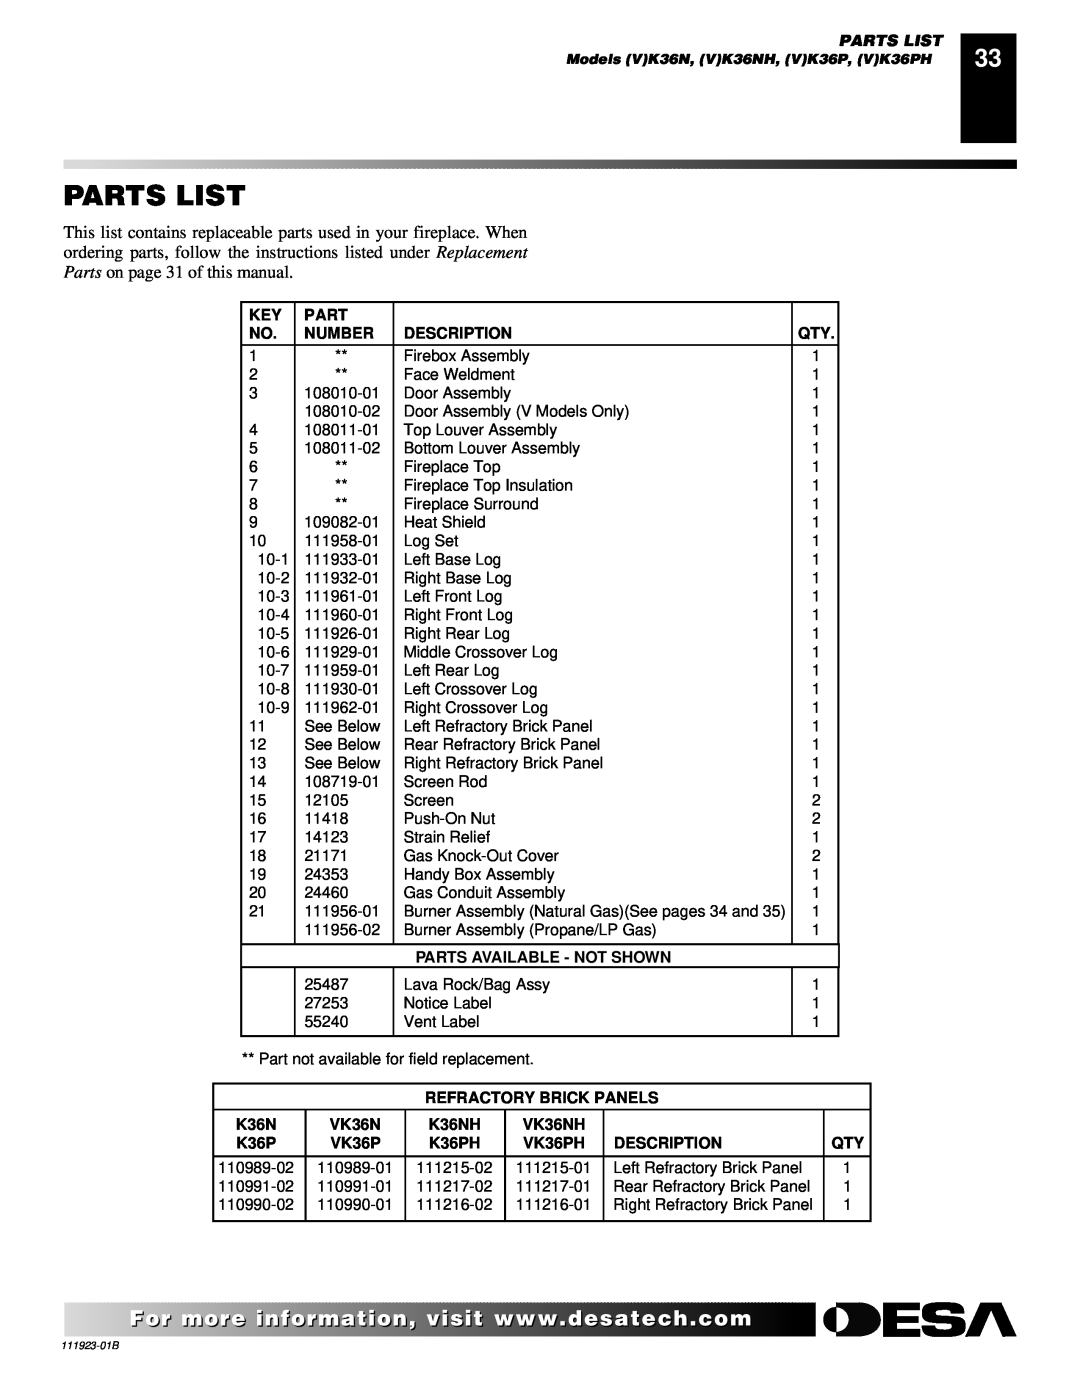 Desa (V)K36P SERIES Parts List, Number, Description, Parts Available - Not Shown, Refractory Brick Panels, VK36N 